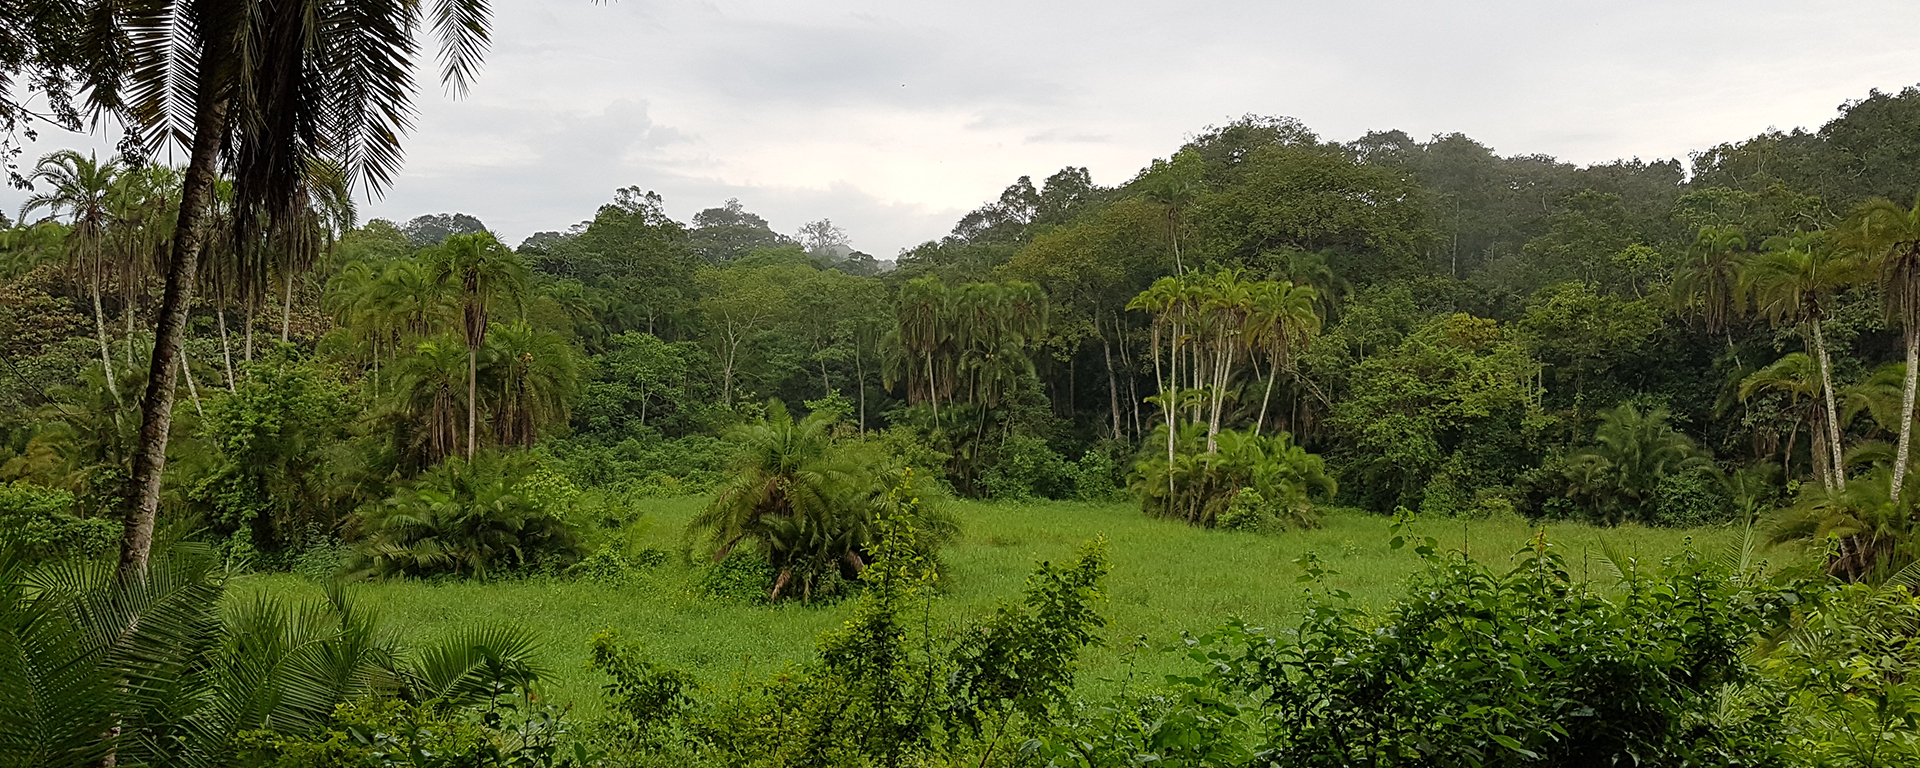 uganda-kibale-forest-chimp-trekking-20